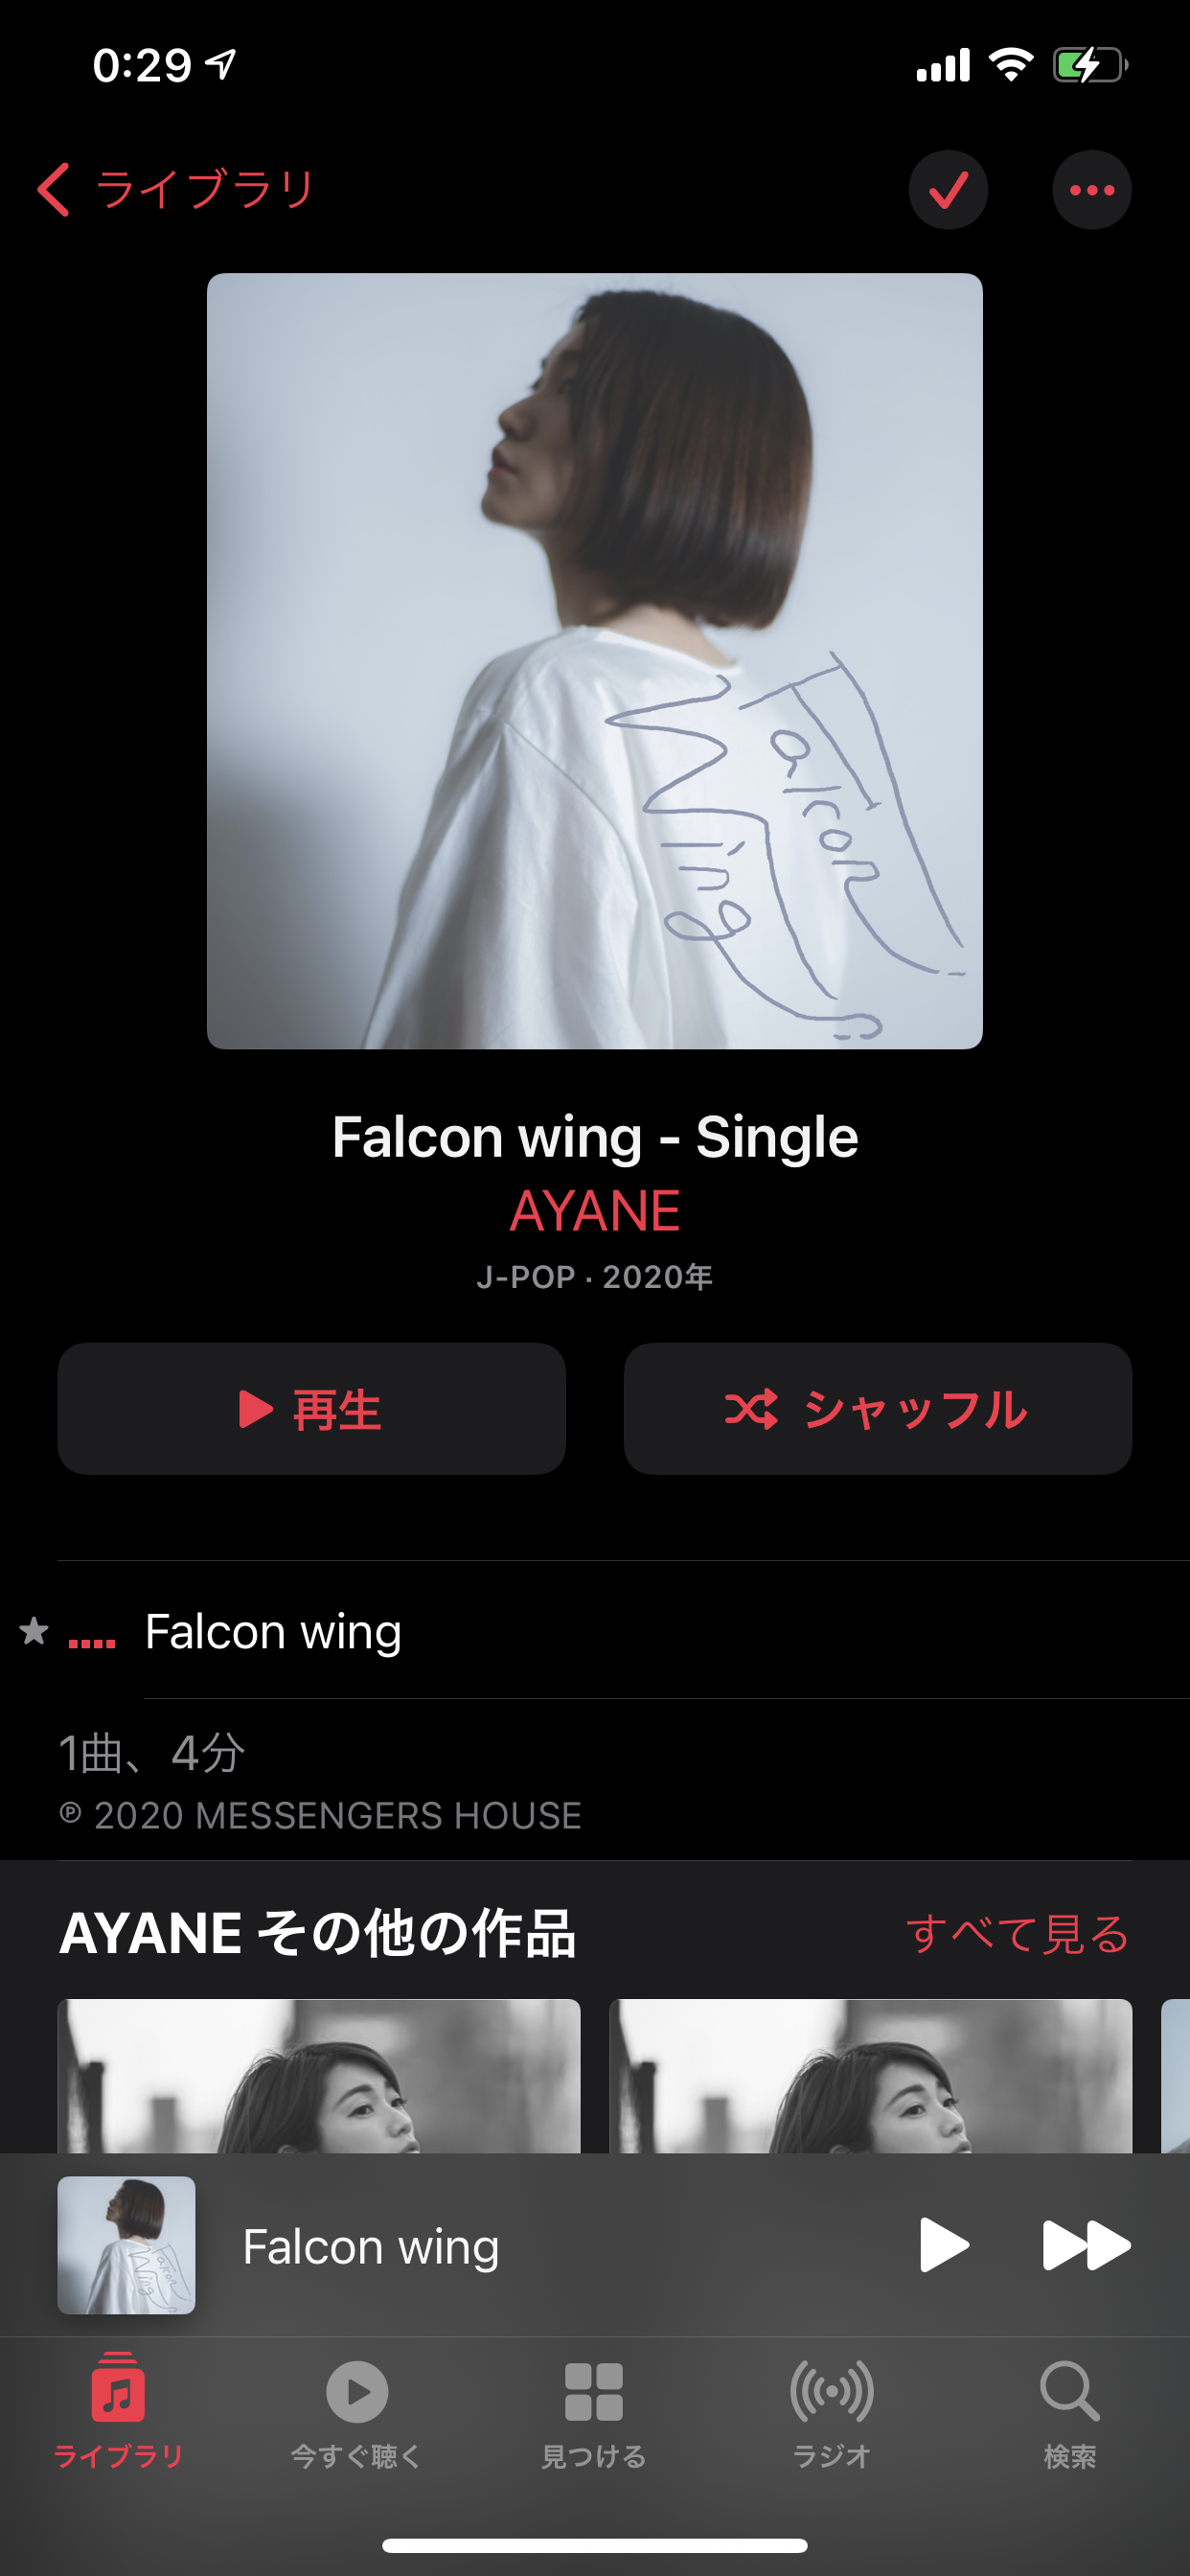 Falcon wing